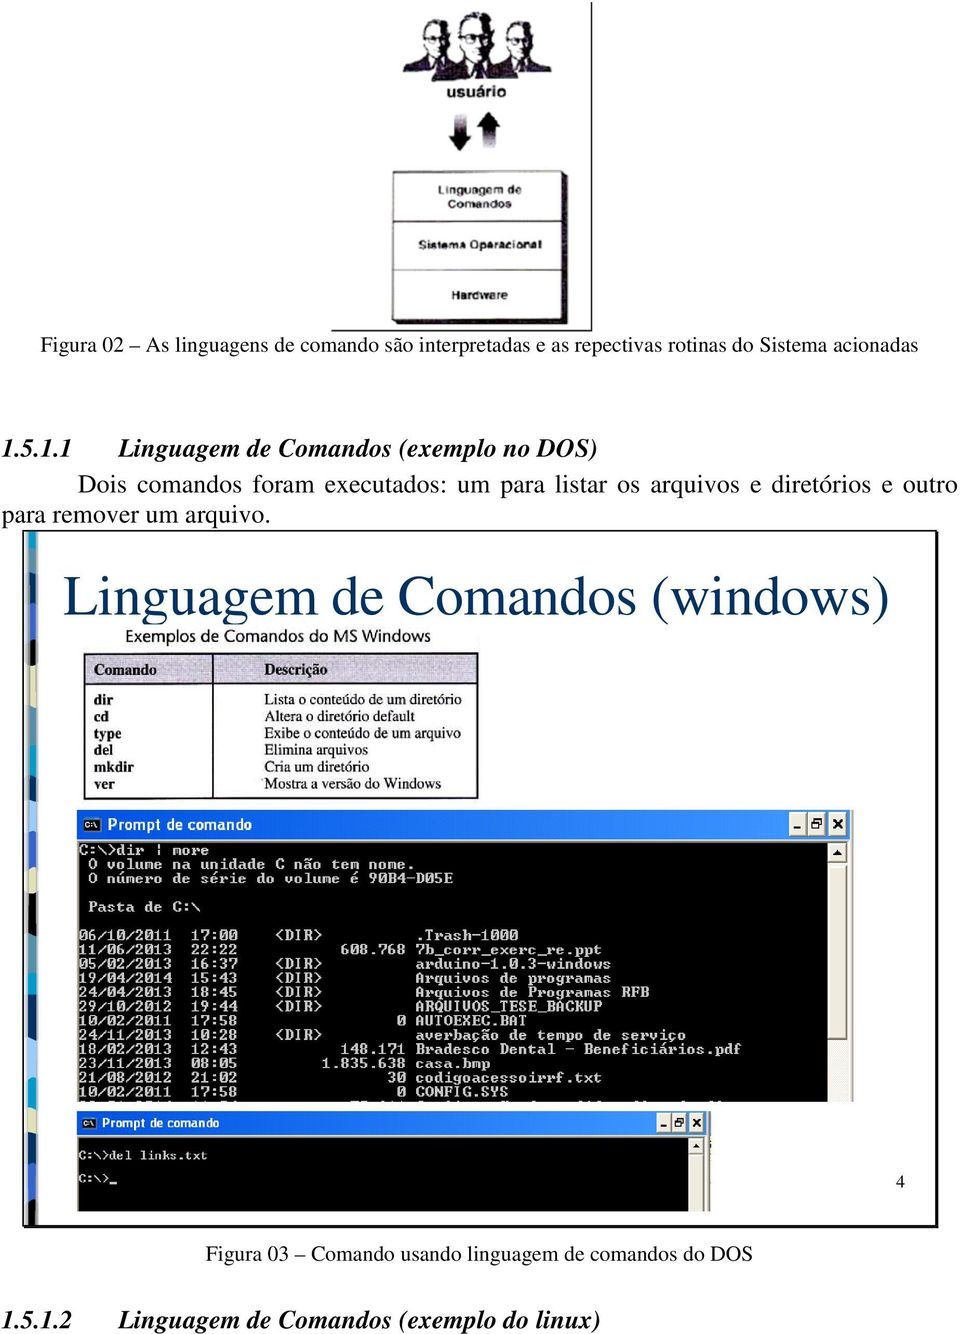 5.1.1 Linguagem de Comandos (exemplo no DOS) Dois comandos foram executados: um para listar os